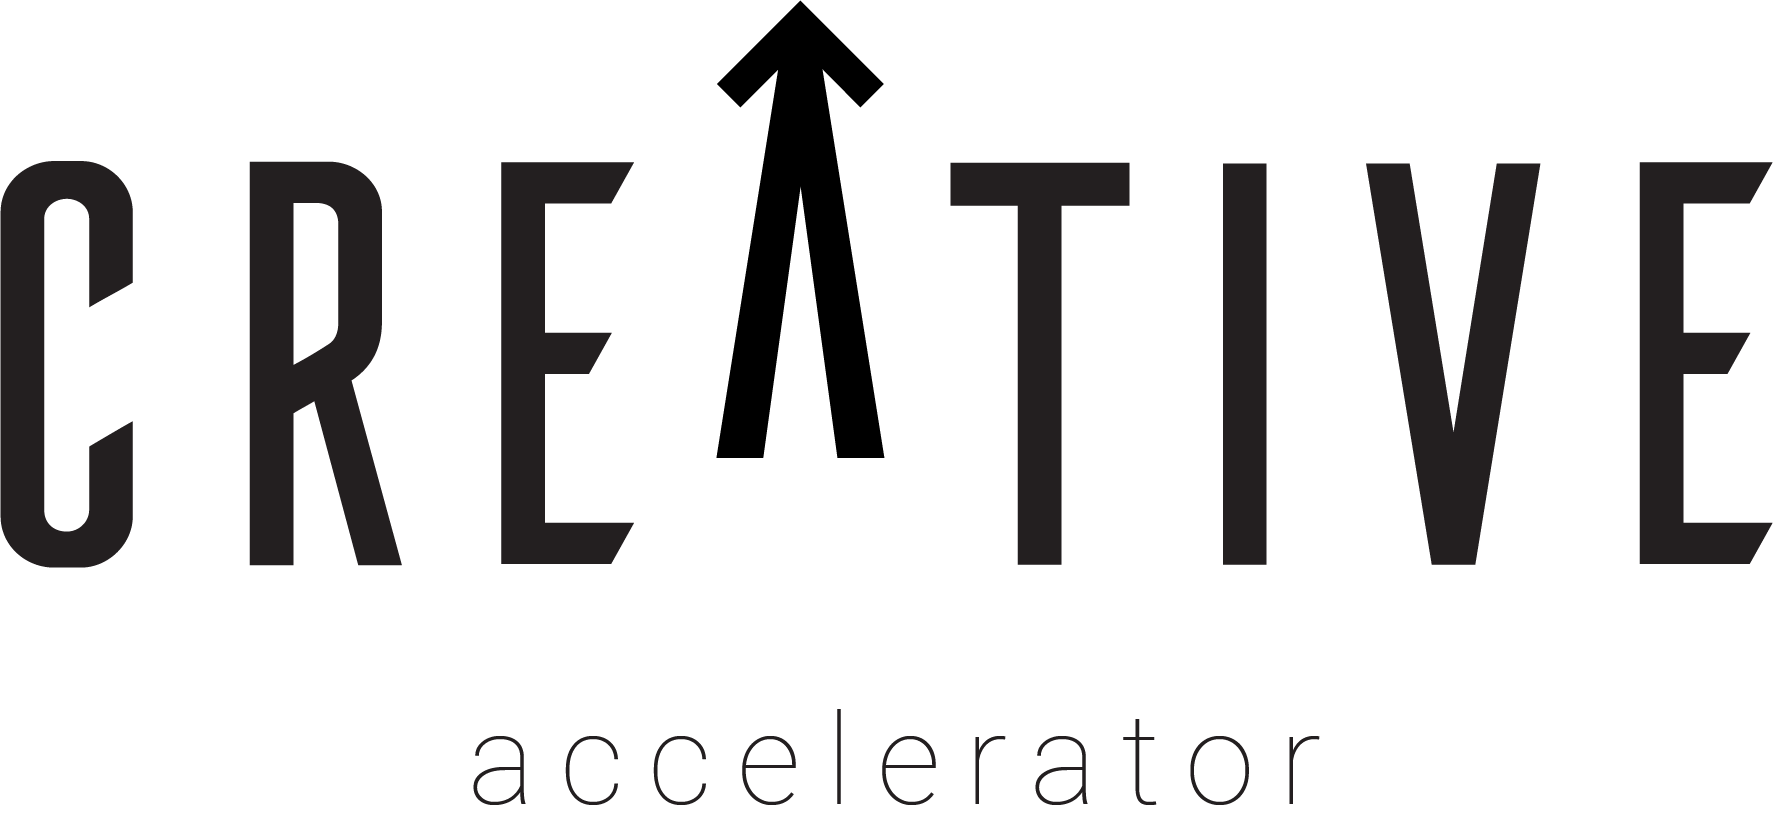 Creative Accelerator Logotipo